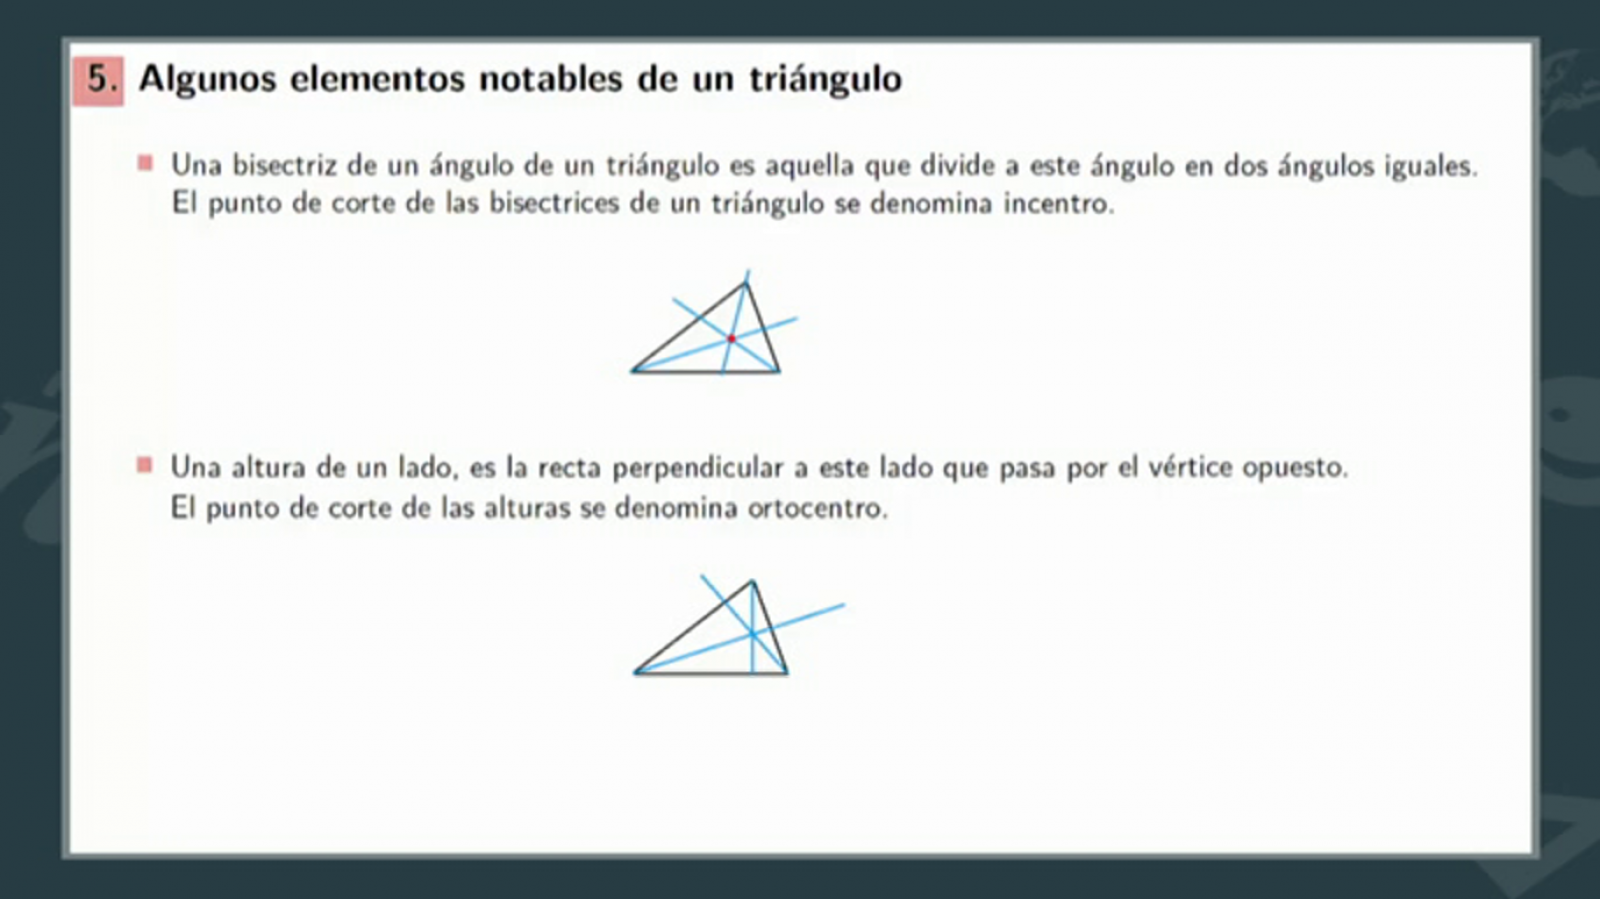 Aprendemos en casa - De 12 a 14 años - Matemáticas: Teorema de Pitágoras - RTVE.es